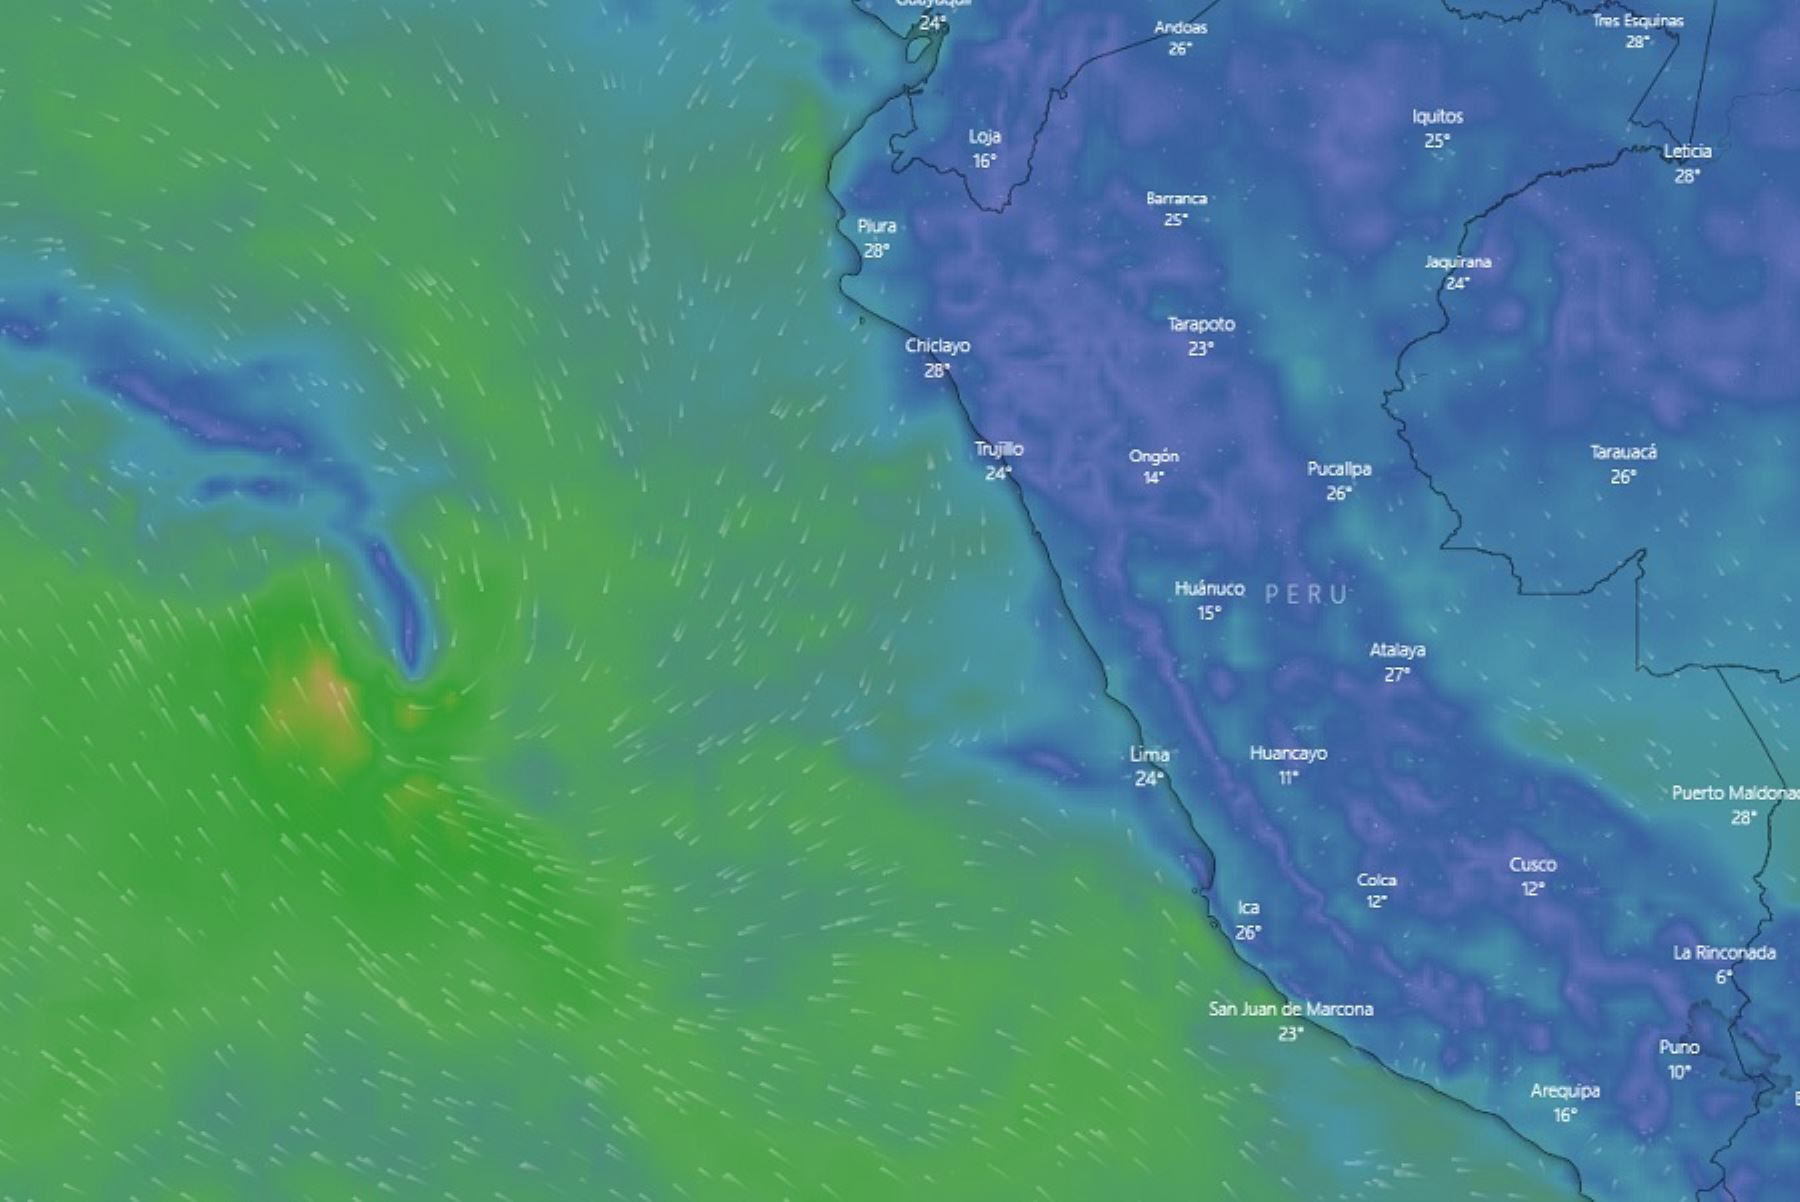 El ciclón Yaku aún permanece frente a las costas del Perú y causa severos estragos en la población, pero su tendencia es a desplazarse hacia el oeste; es decir, hacia la zona central del océano Pacífico alejándose de nuestro litoral, informó el Senamhi.